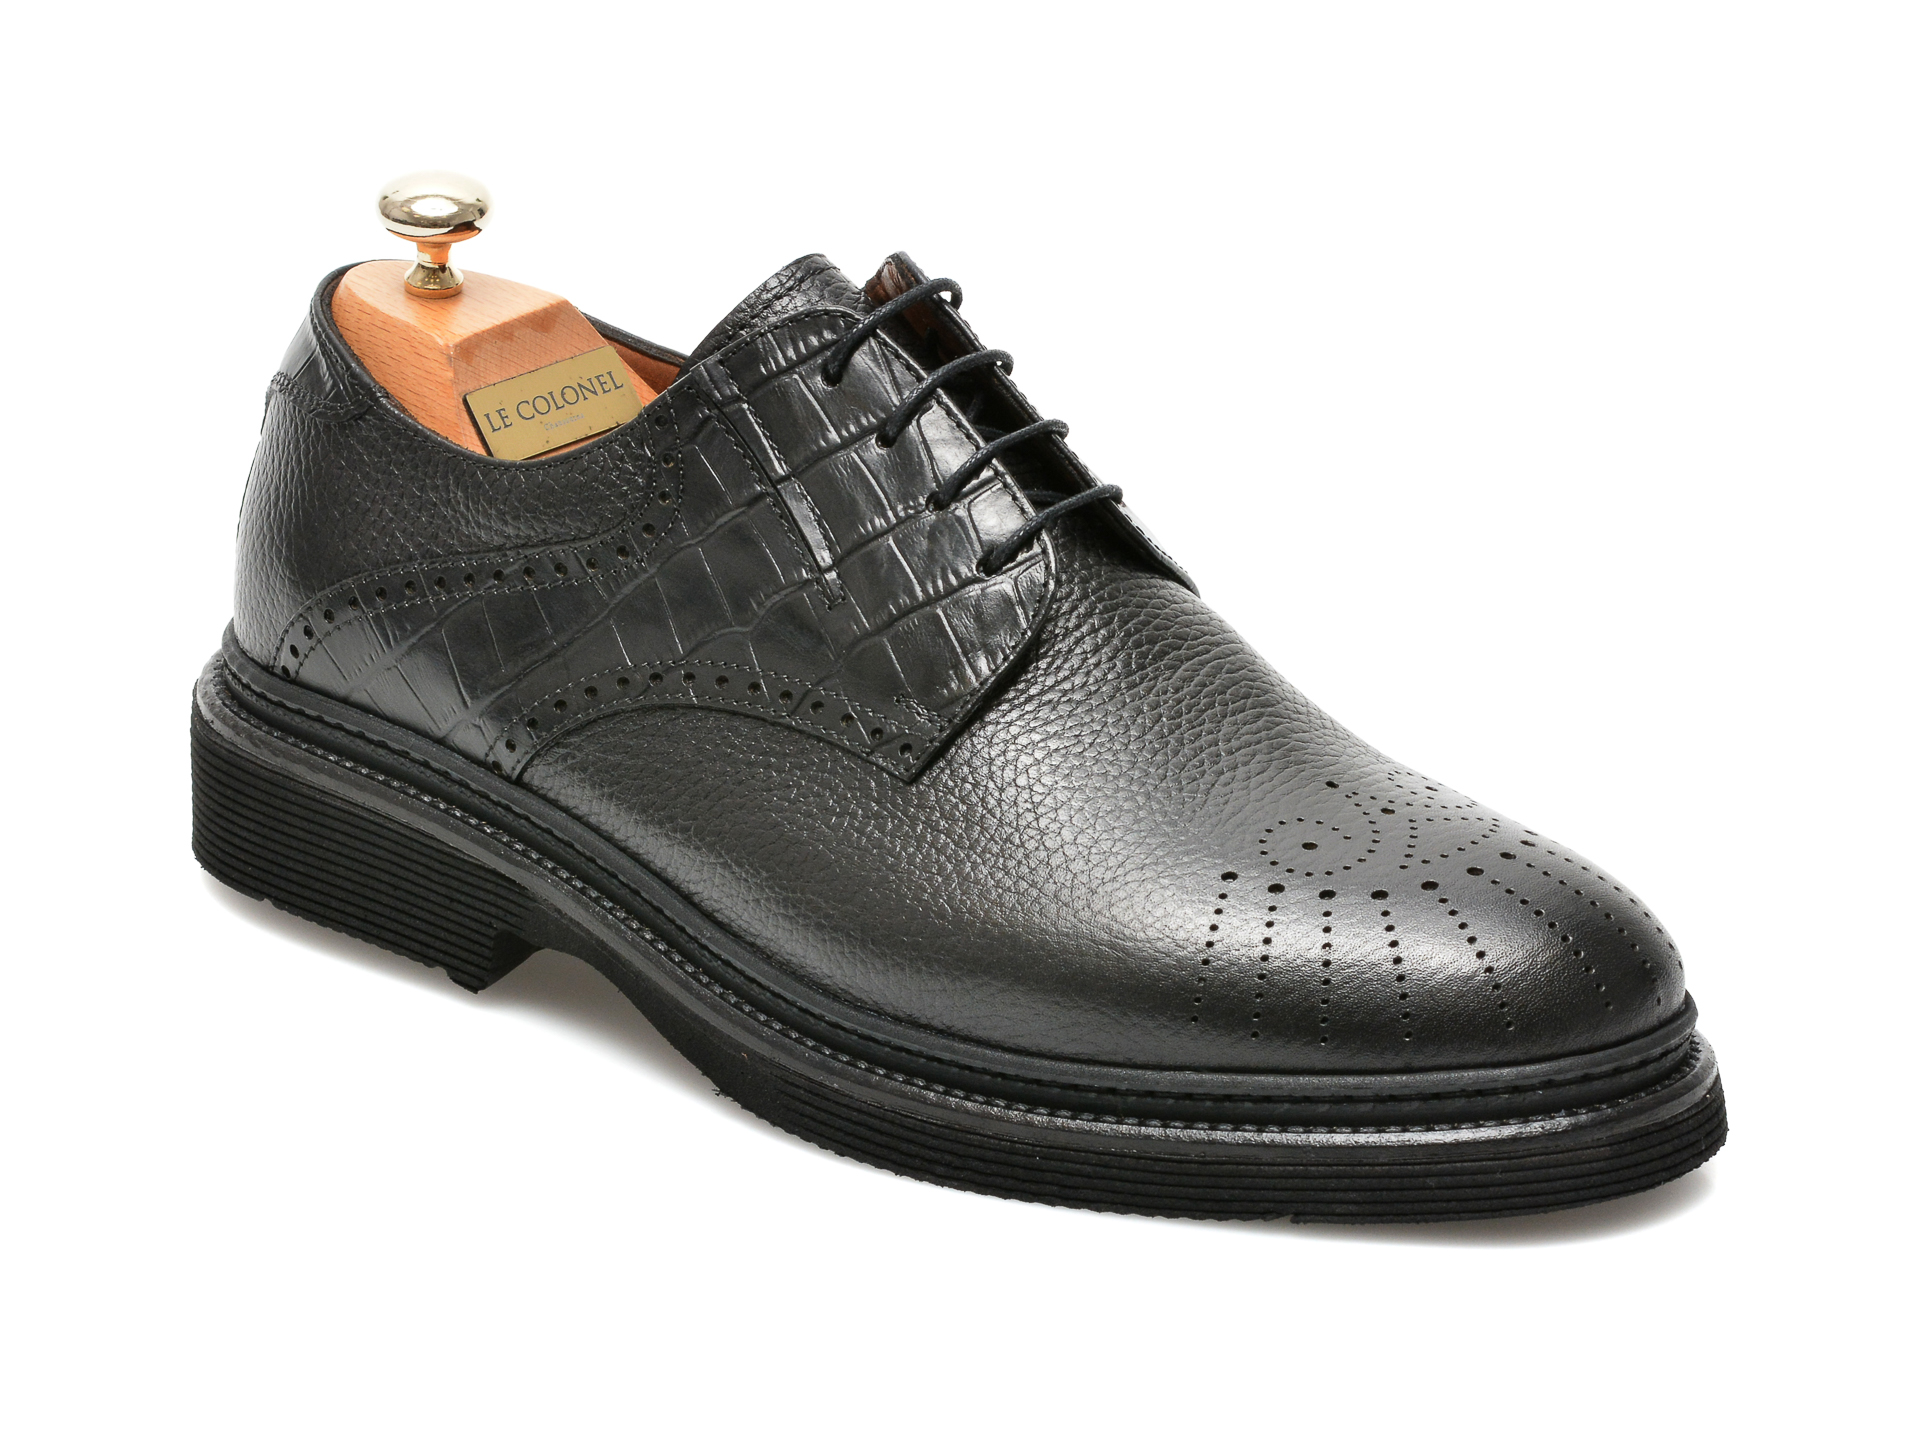 Pantofi LE COLONEL negri, 61722, din piele naturala Le Colonel